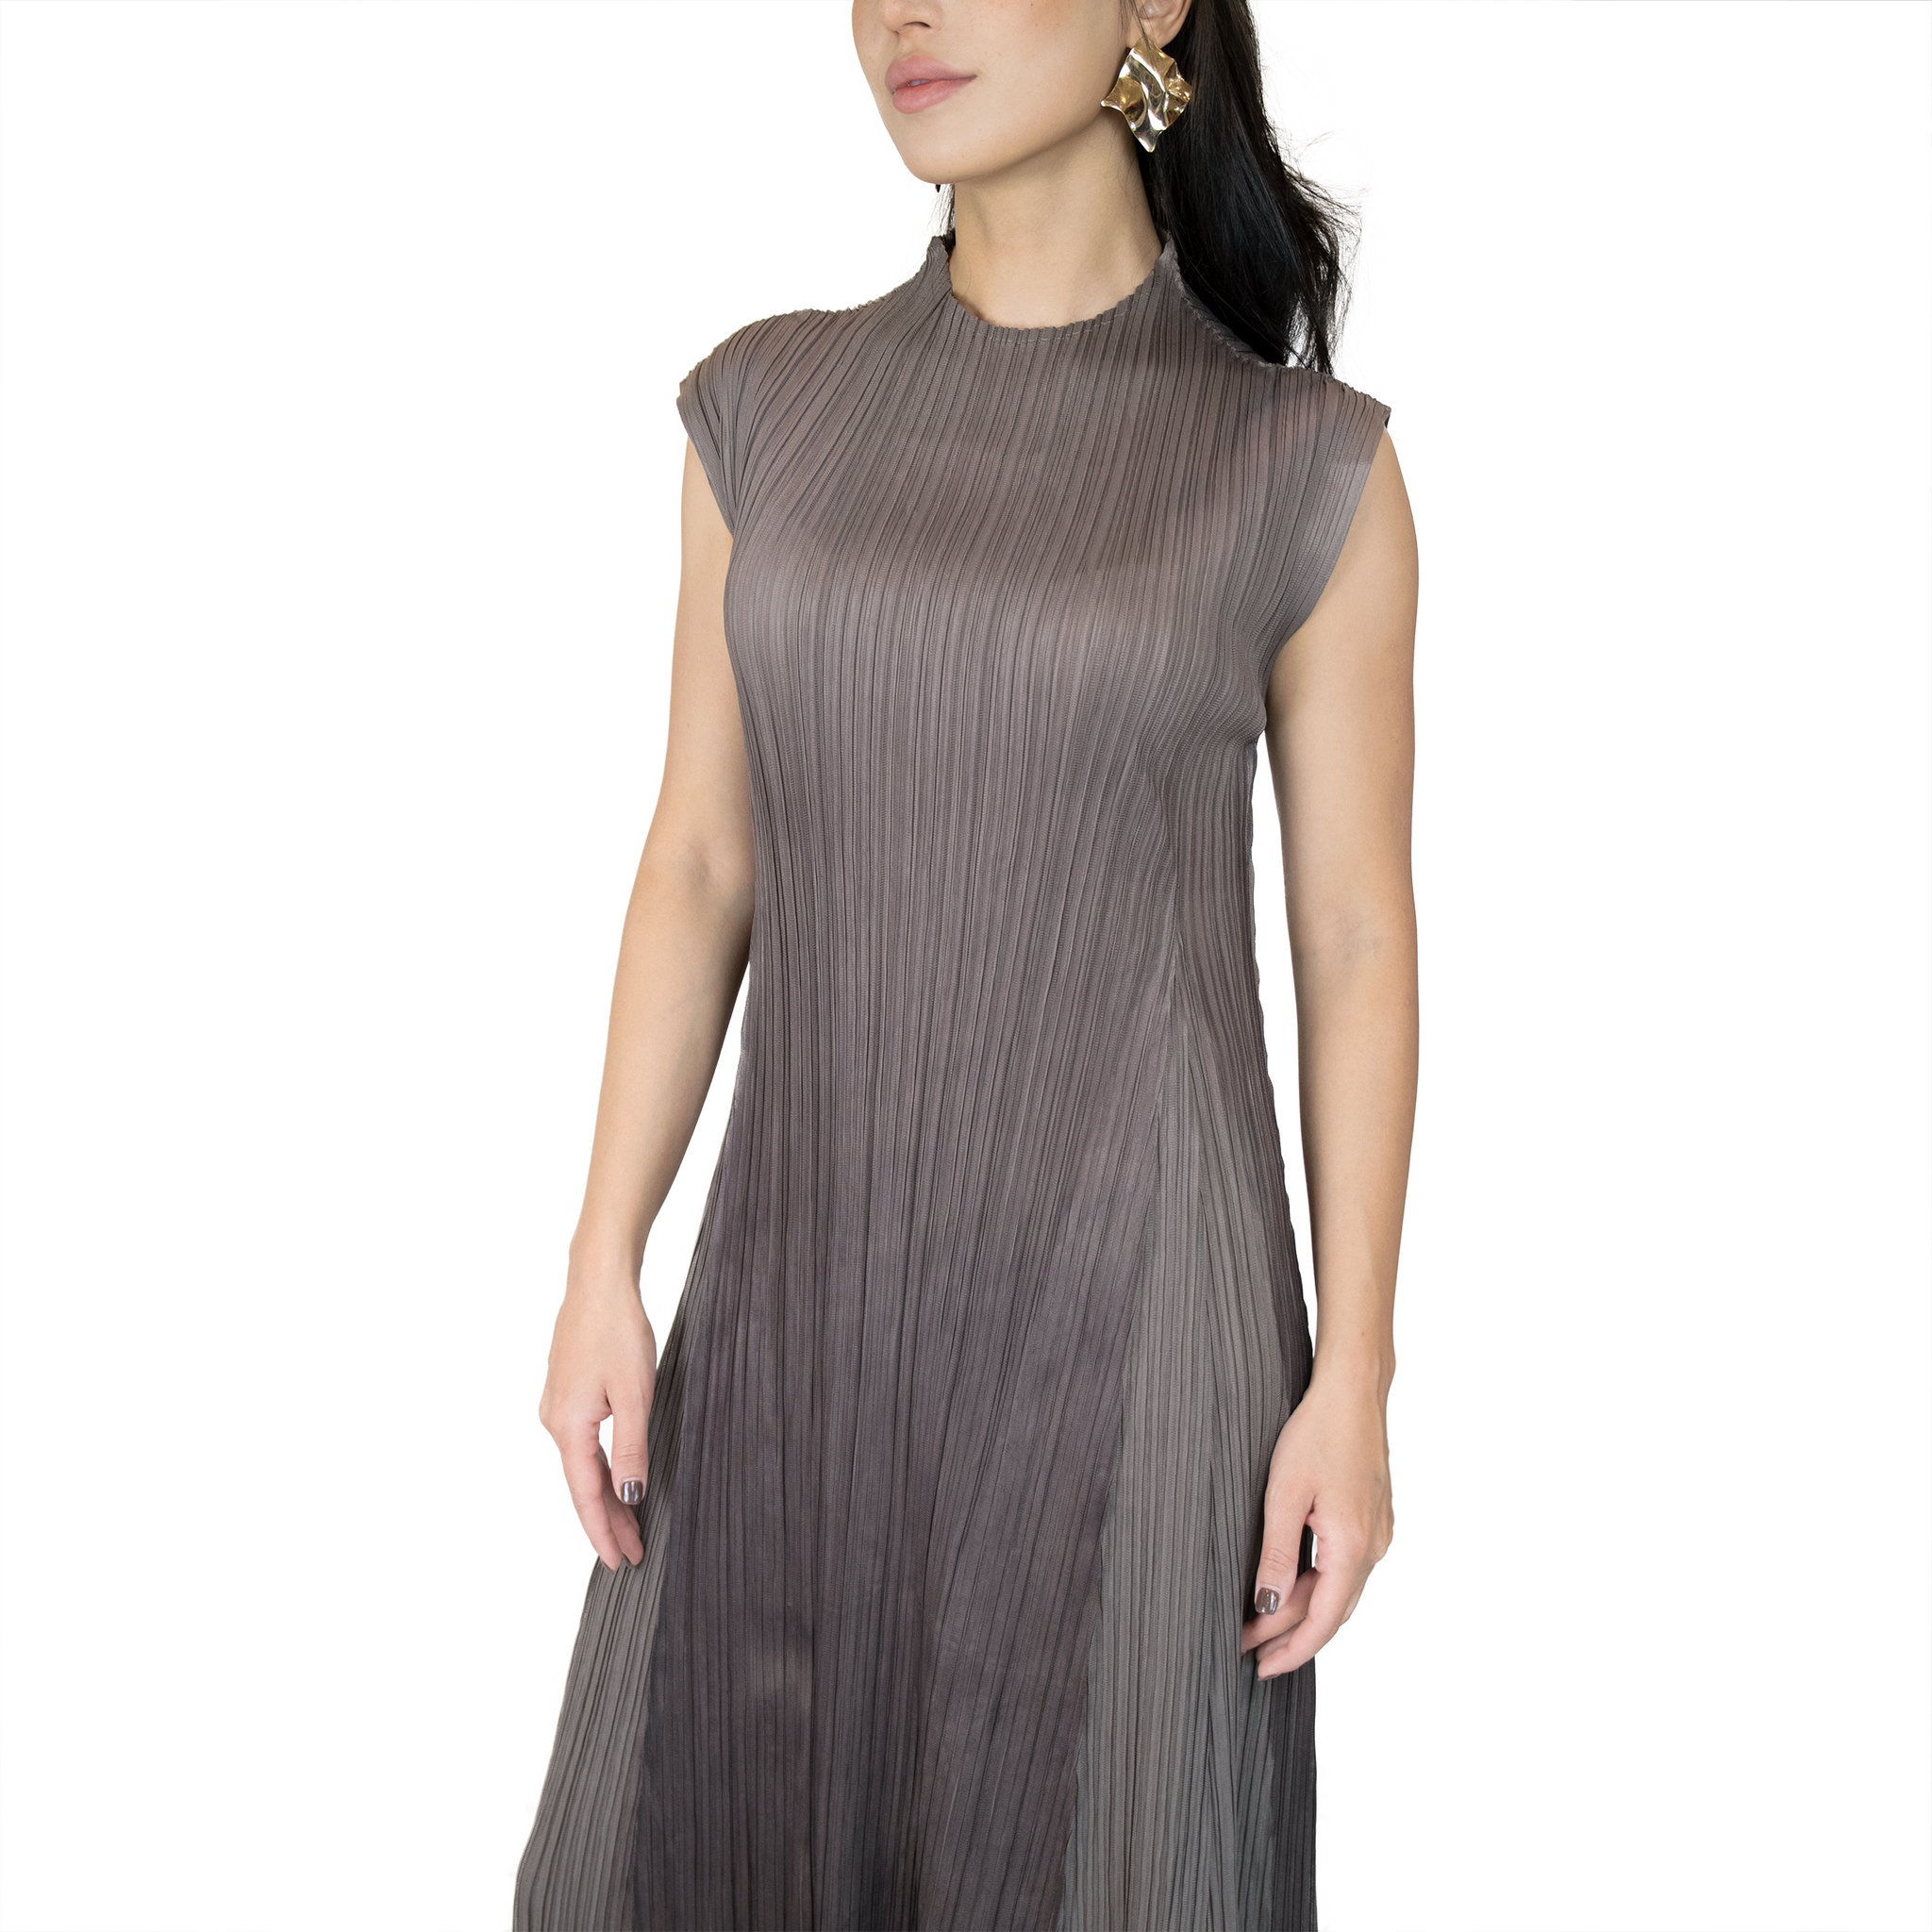 Pleated diagonal-cut ruffle dress